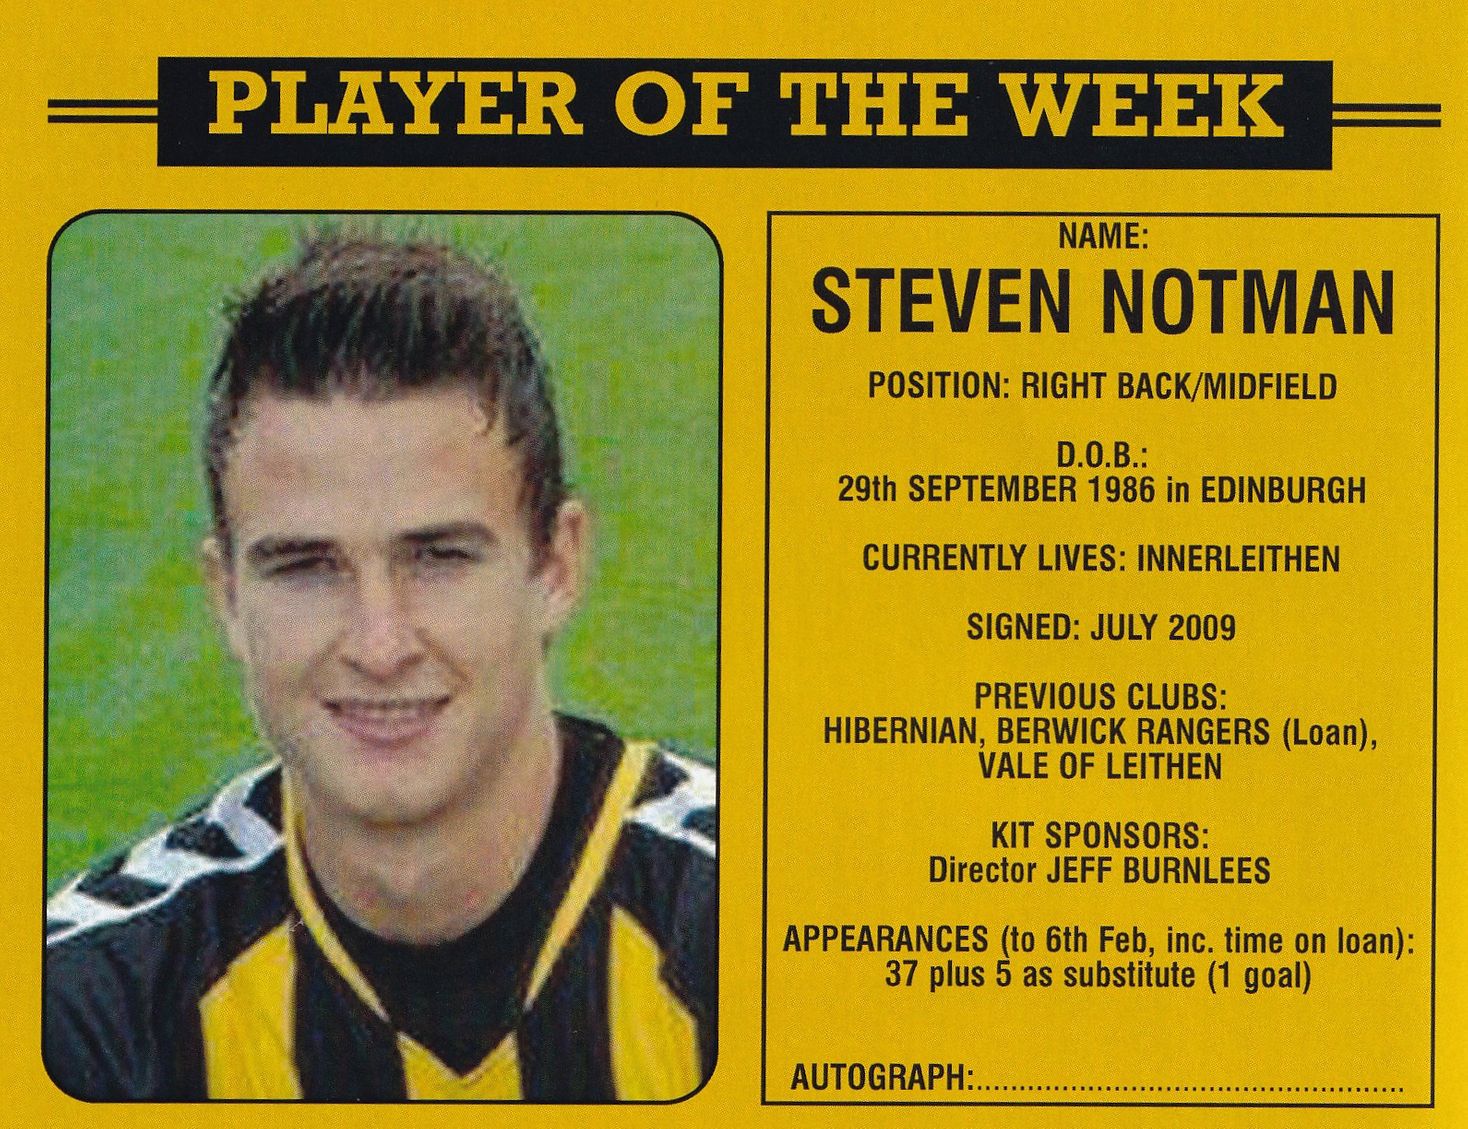 Steven Notman